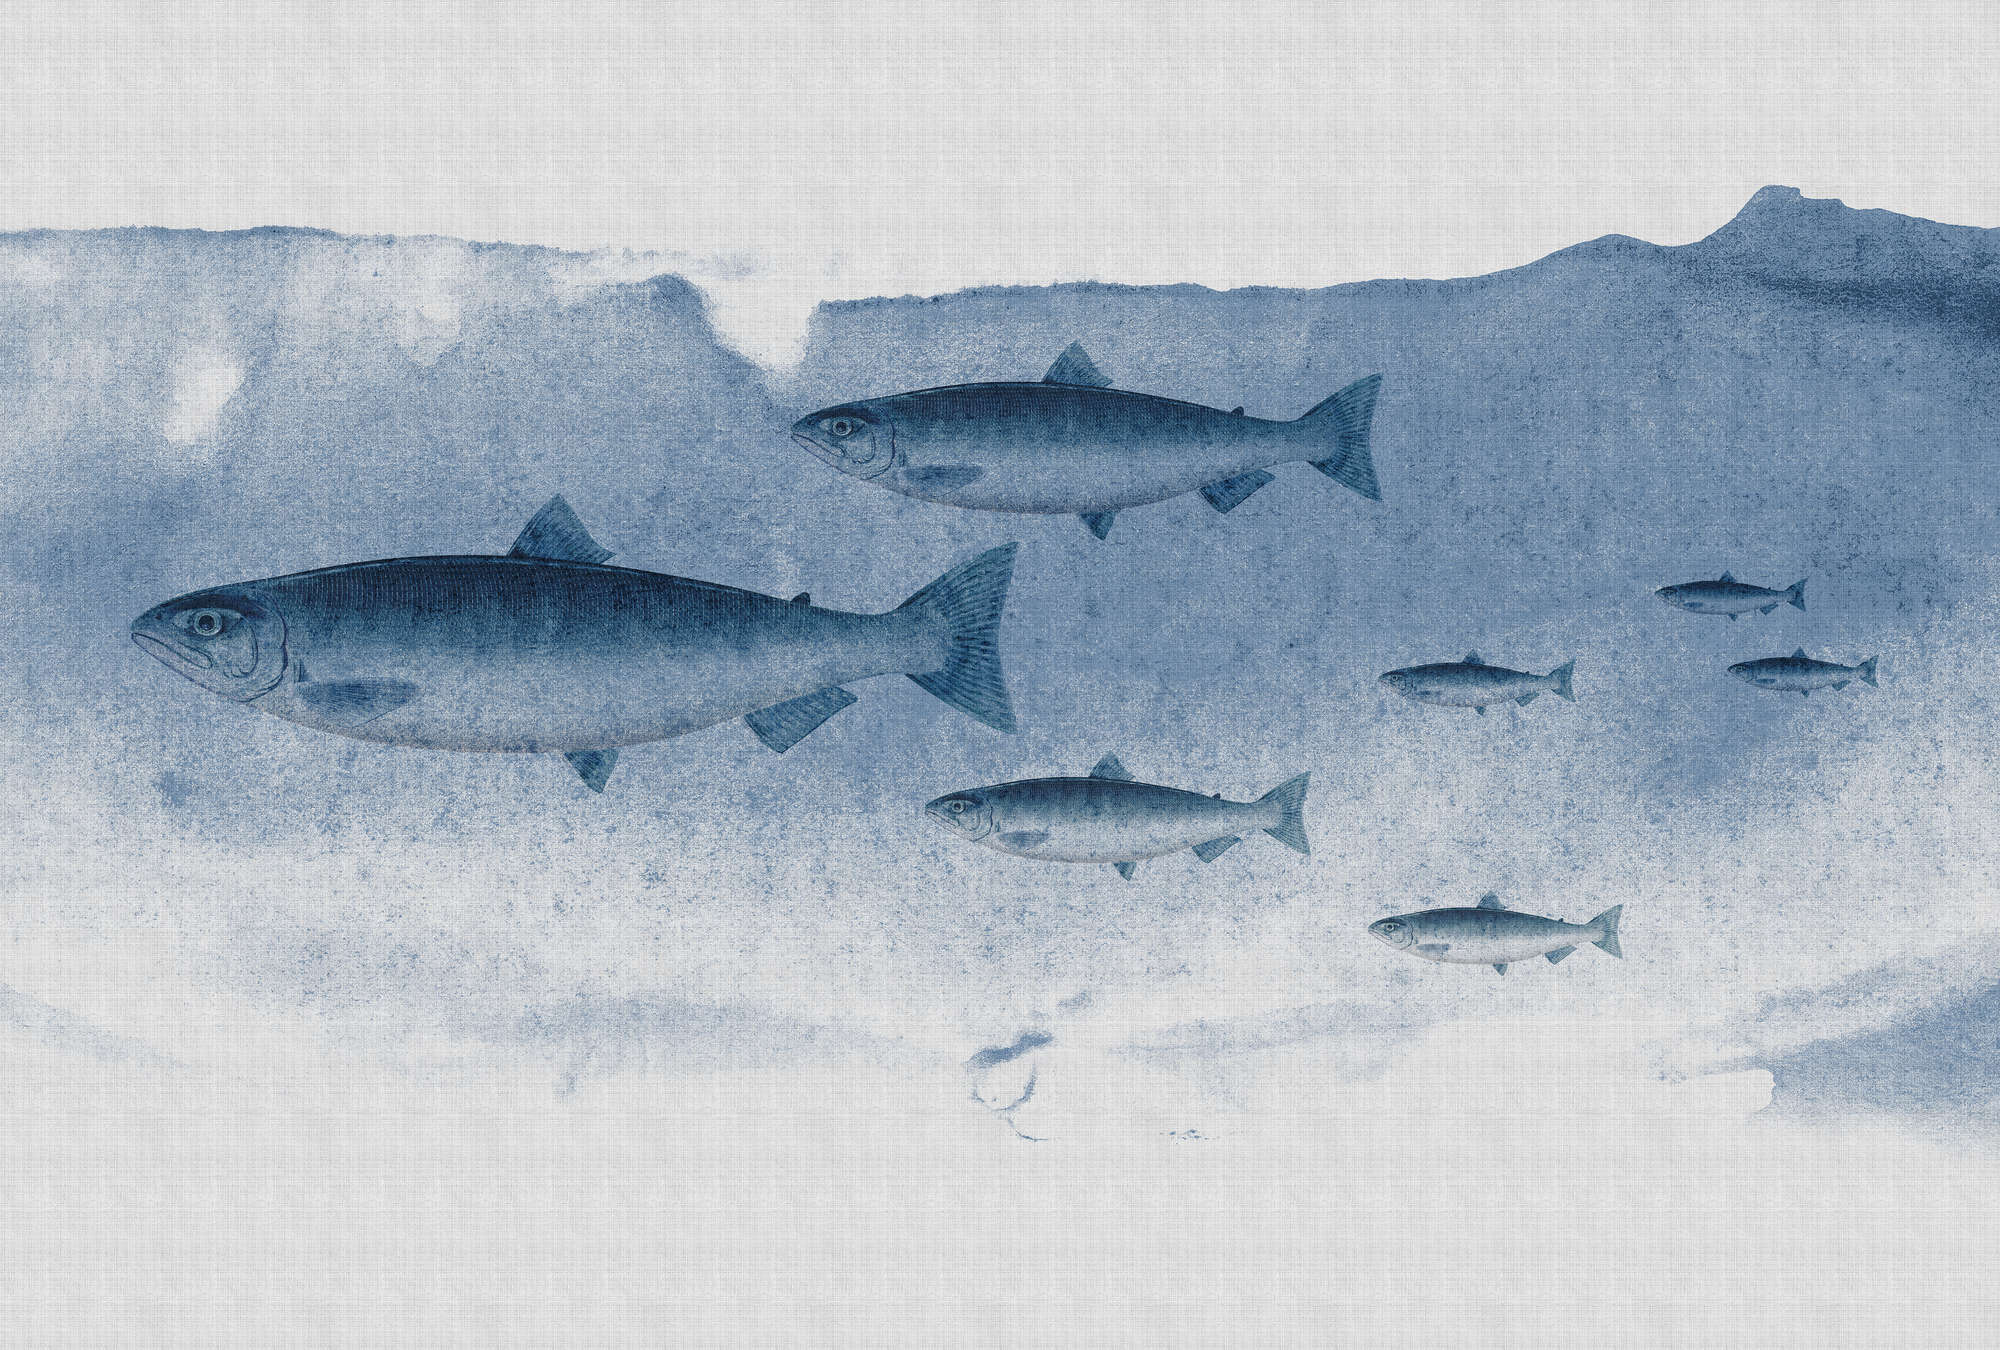             Into the blue 1 - Fisch Aquarell in Blau als Fototapete in naturleinen Struktur – Blau, Grau | Perlmutt Glattvlies
        